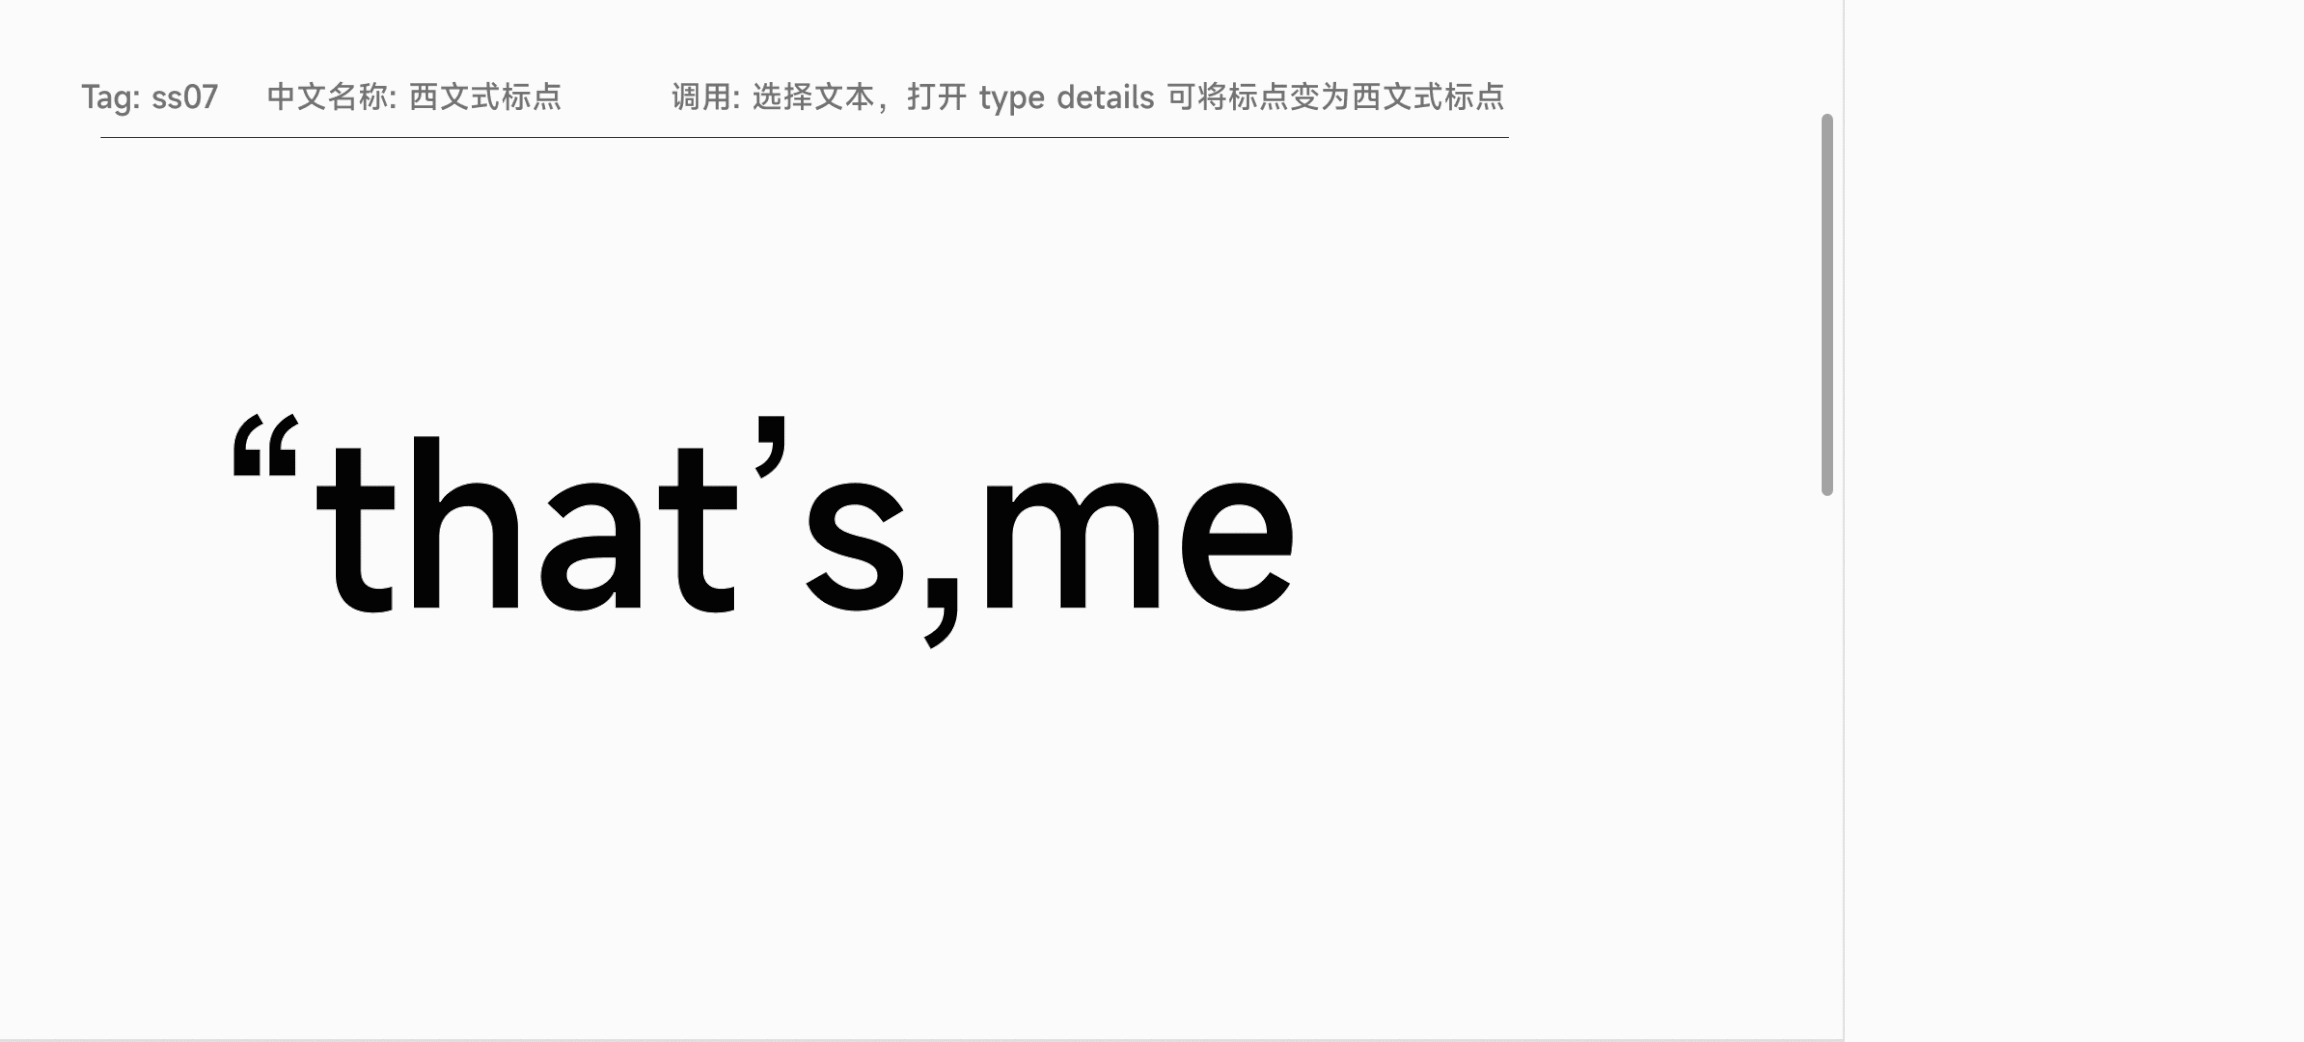 小米发布全新字体MiSans 供全社会免费商用(图5)